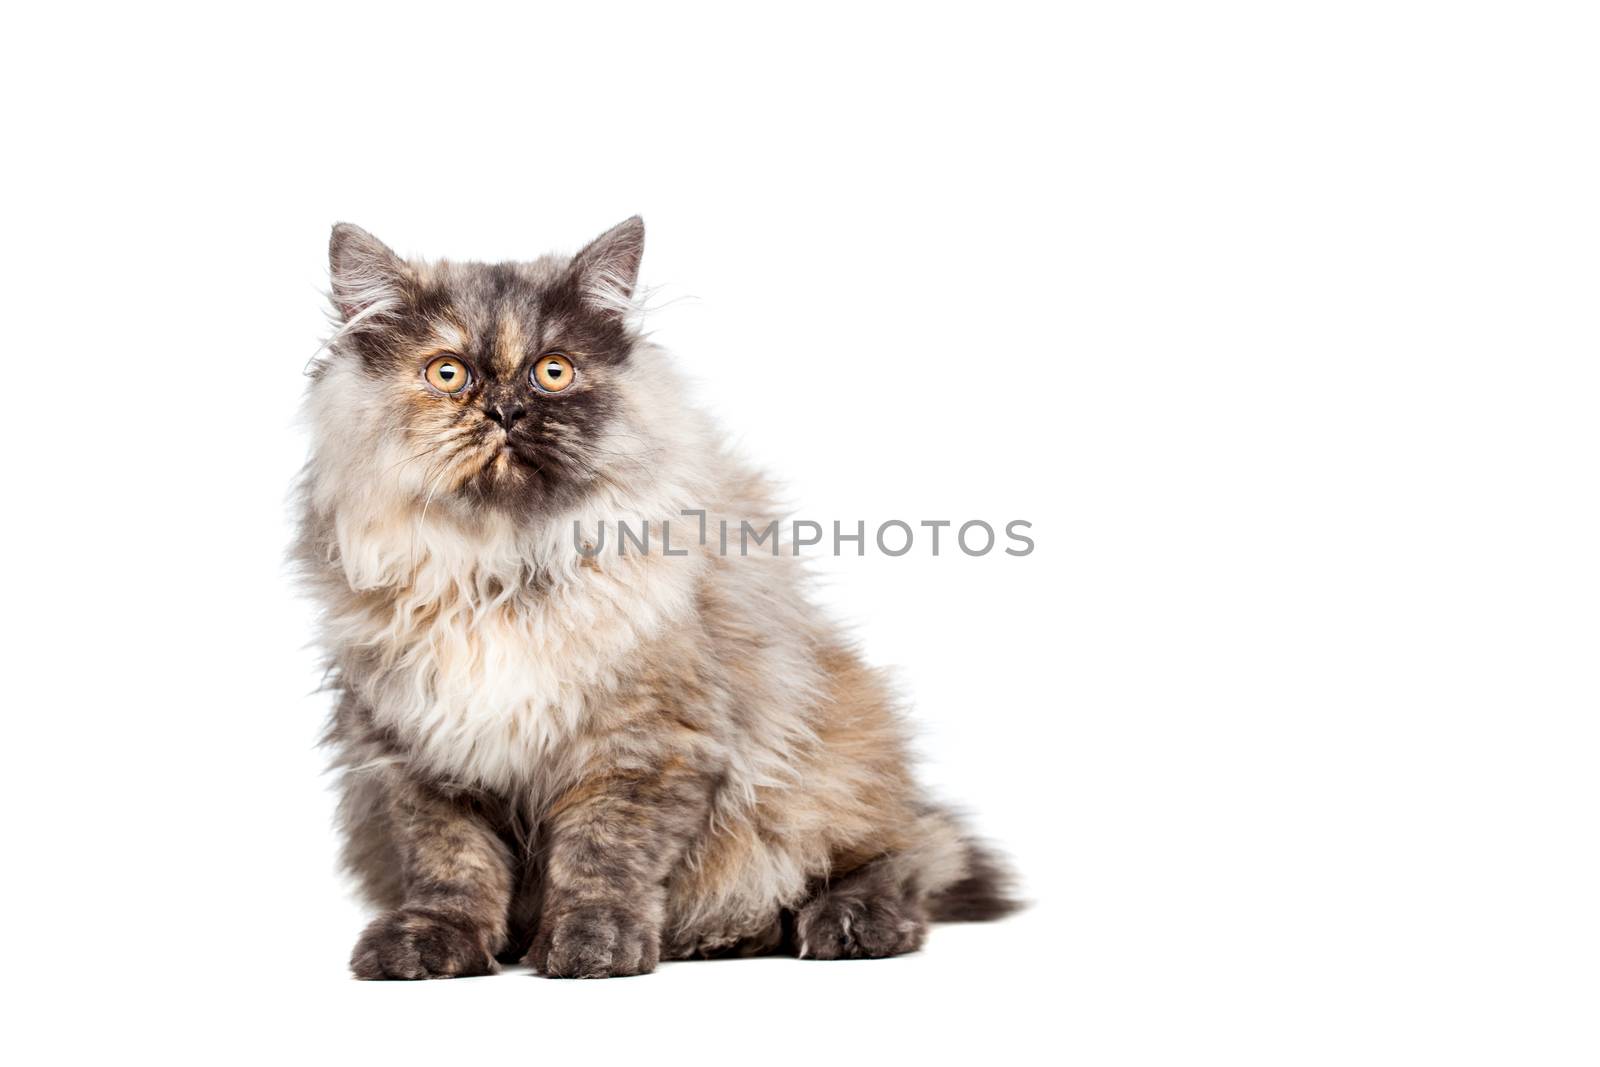 Chinchilla Persian cat by kokimk